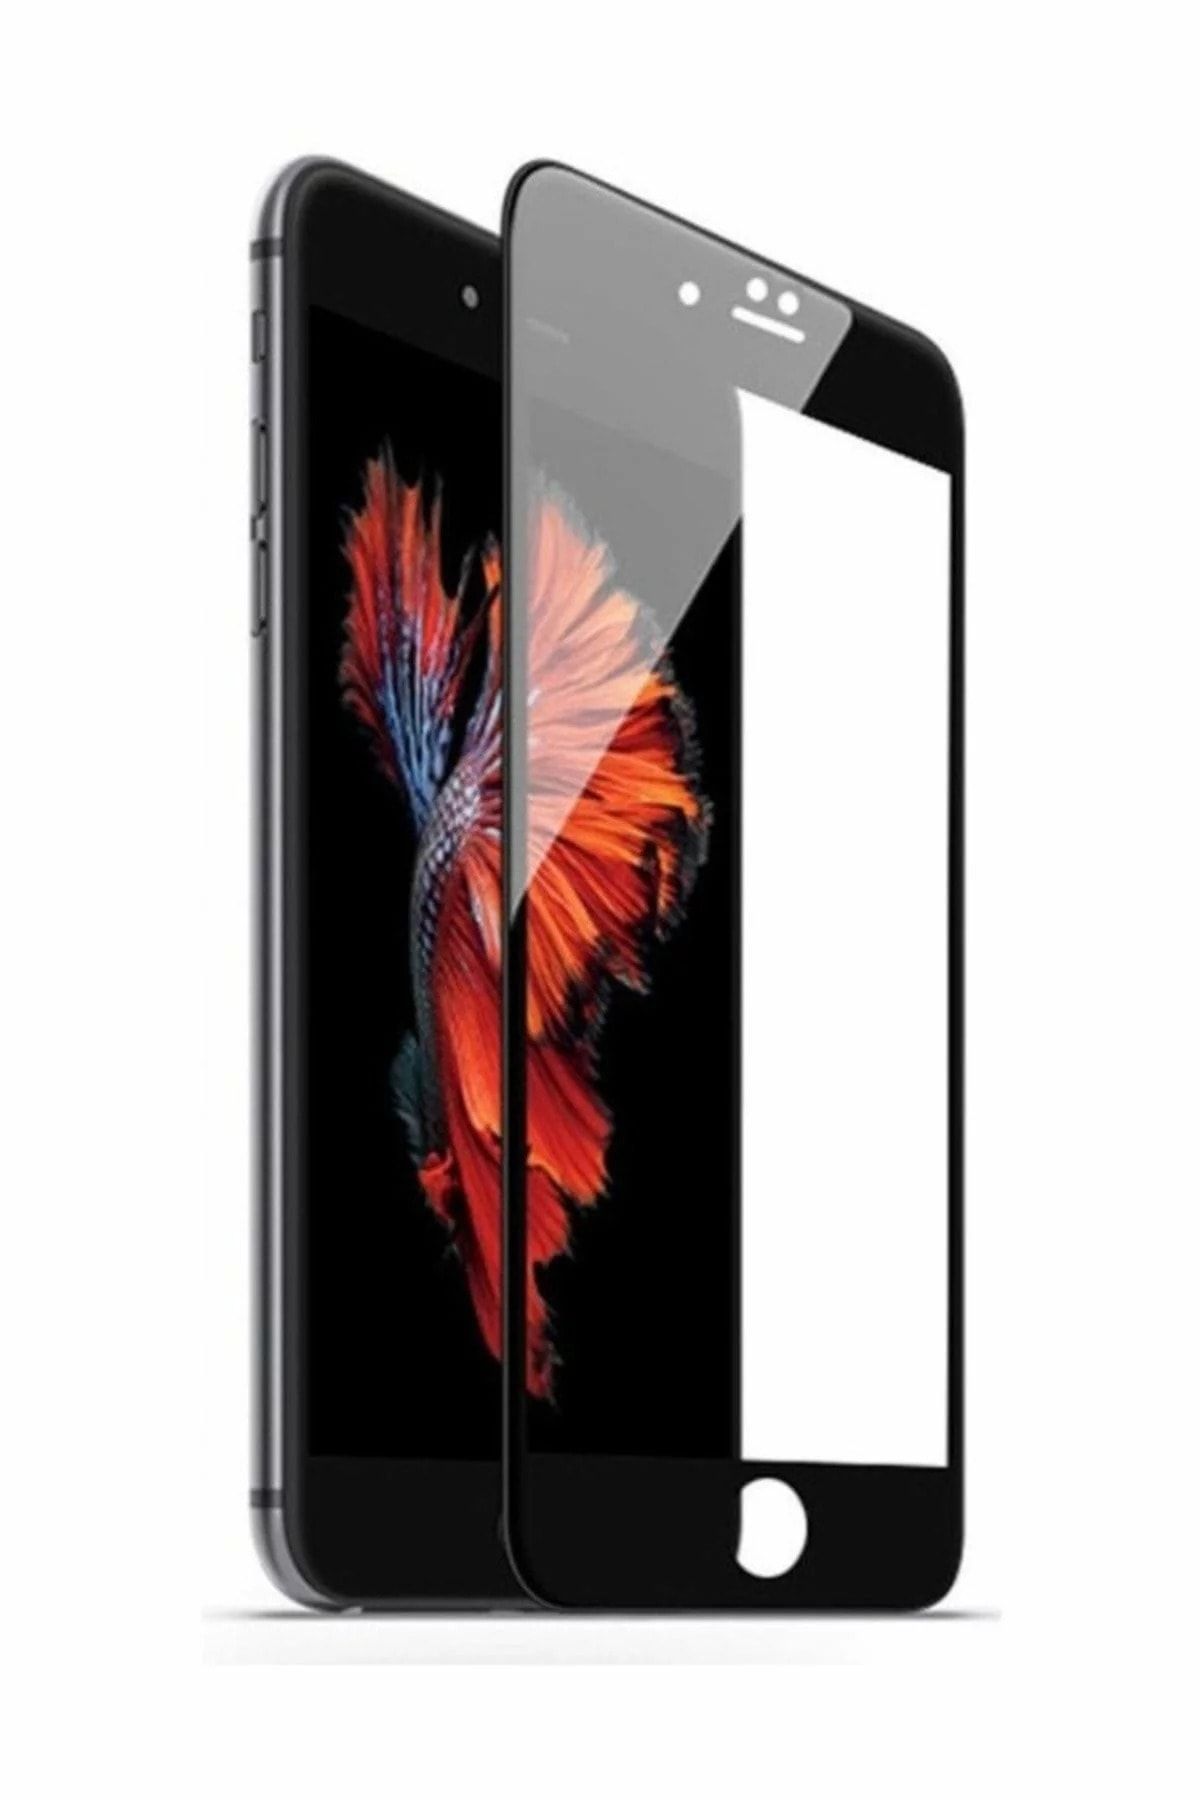 FiberAksesuar Apple Iphone 8 9d Tam Tam Kaplayan Koruma Full Kapatan Kavisli Kırılmaz Cam Ekran Koruyucu Siyah